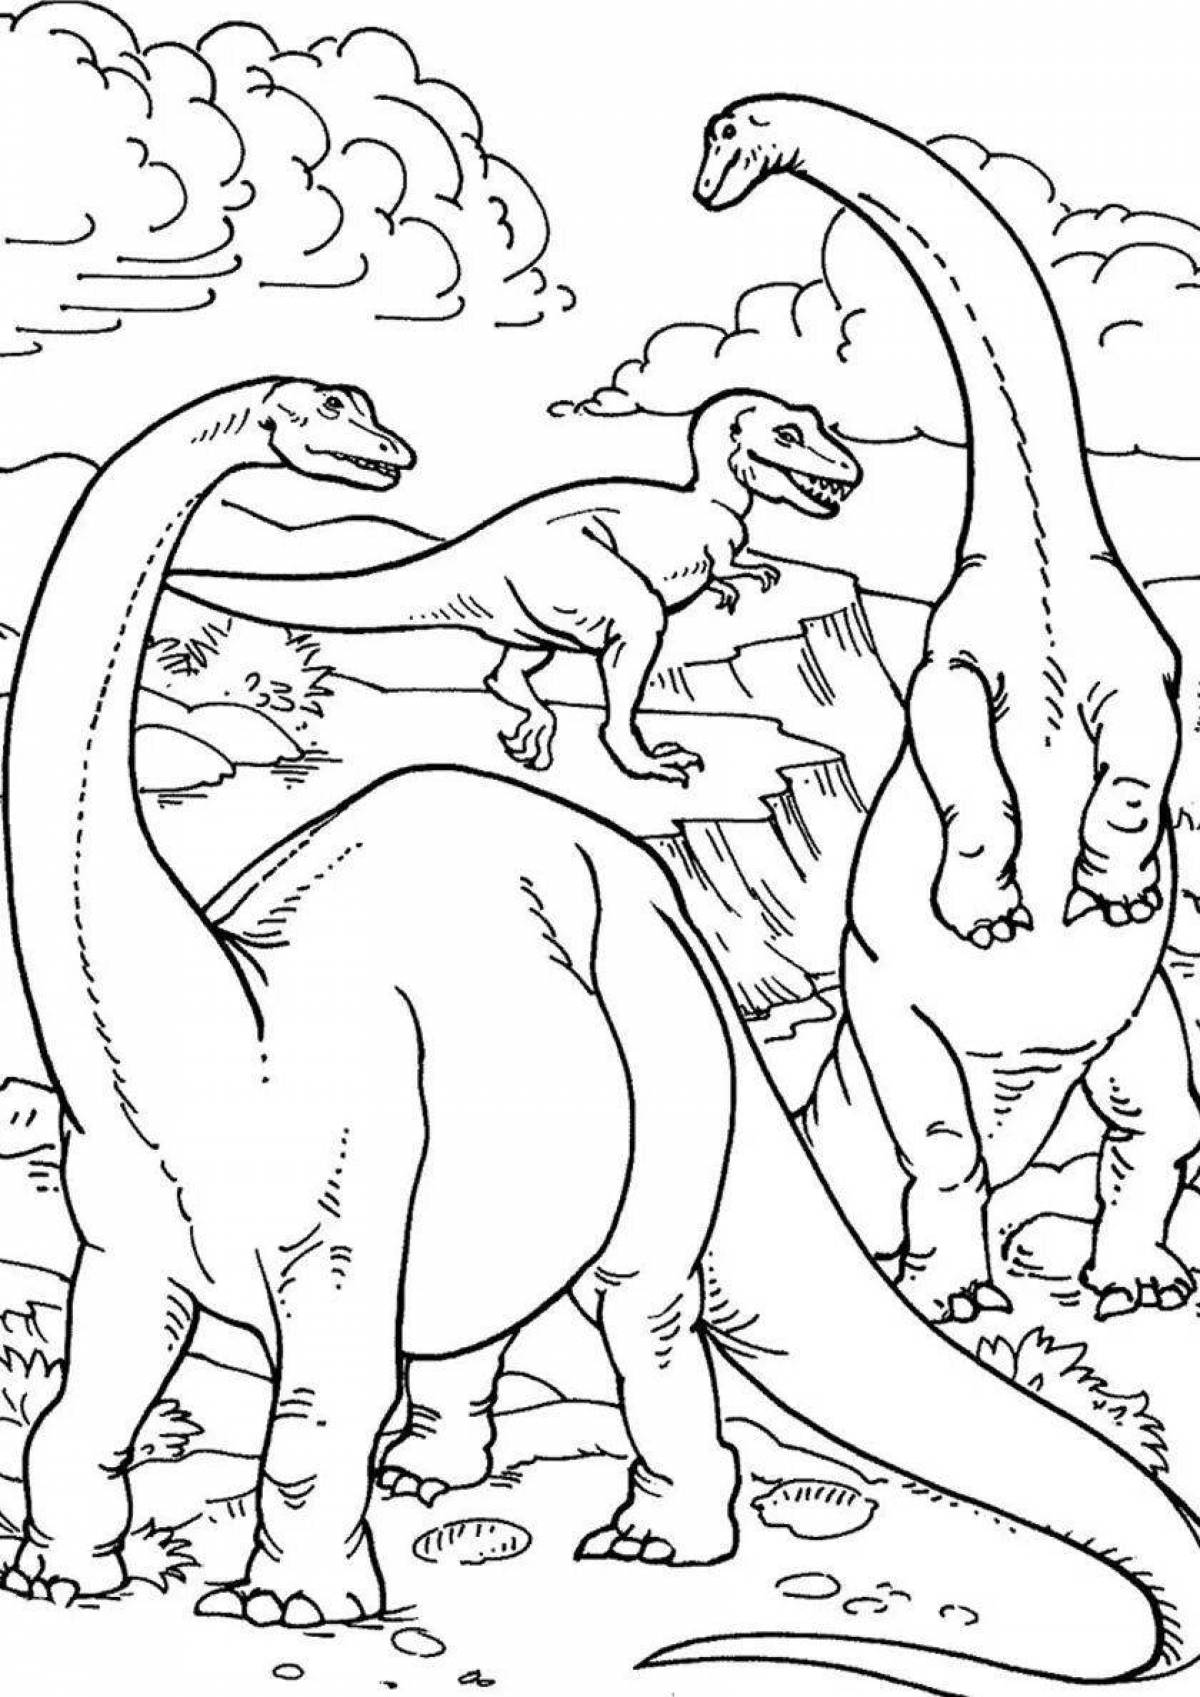 Brontosaurus fun coloring book